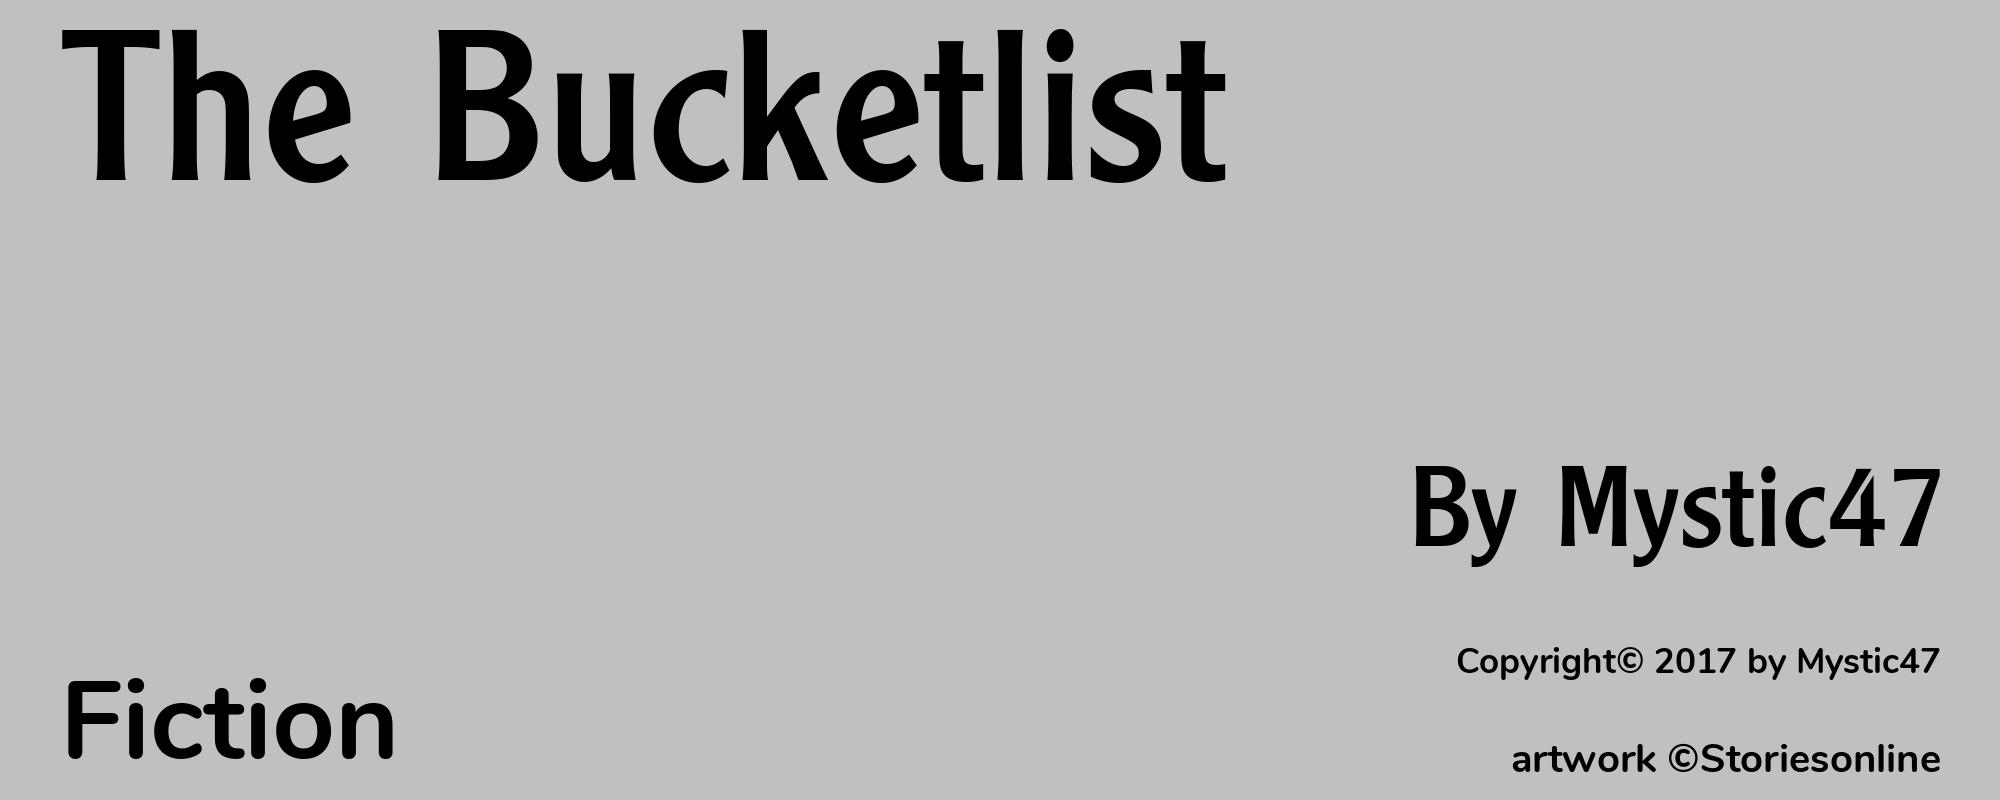 The Bucketlist - Cover